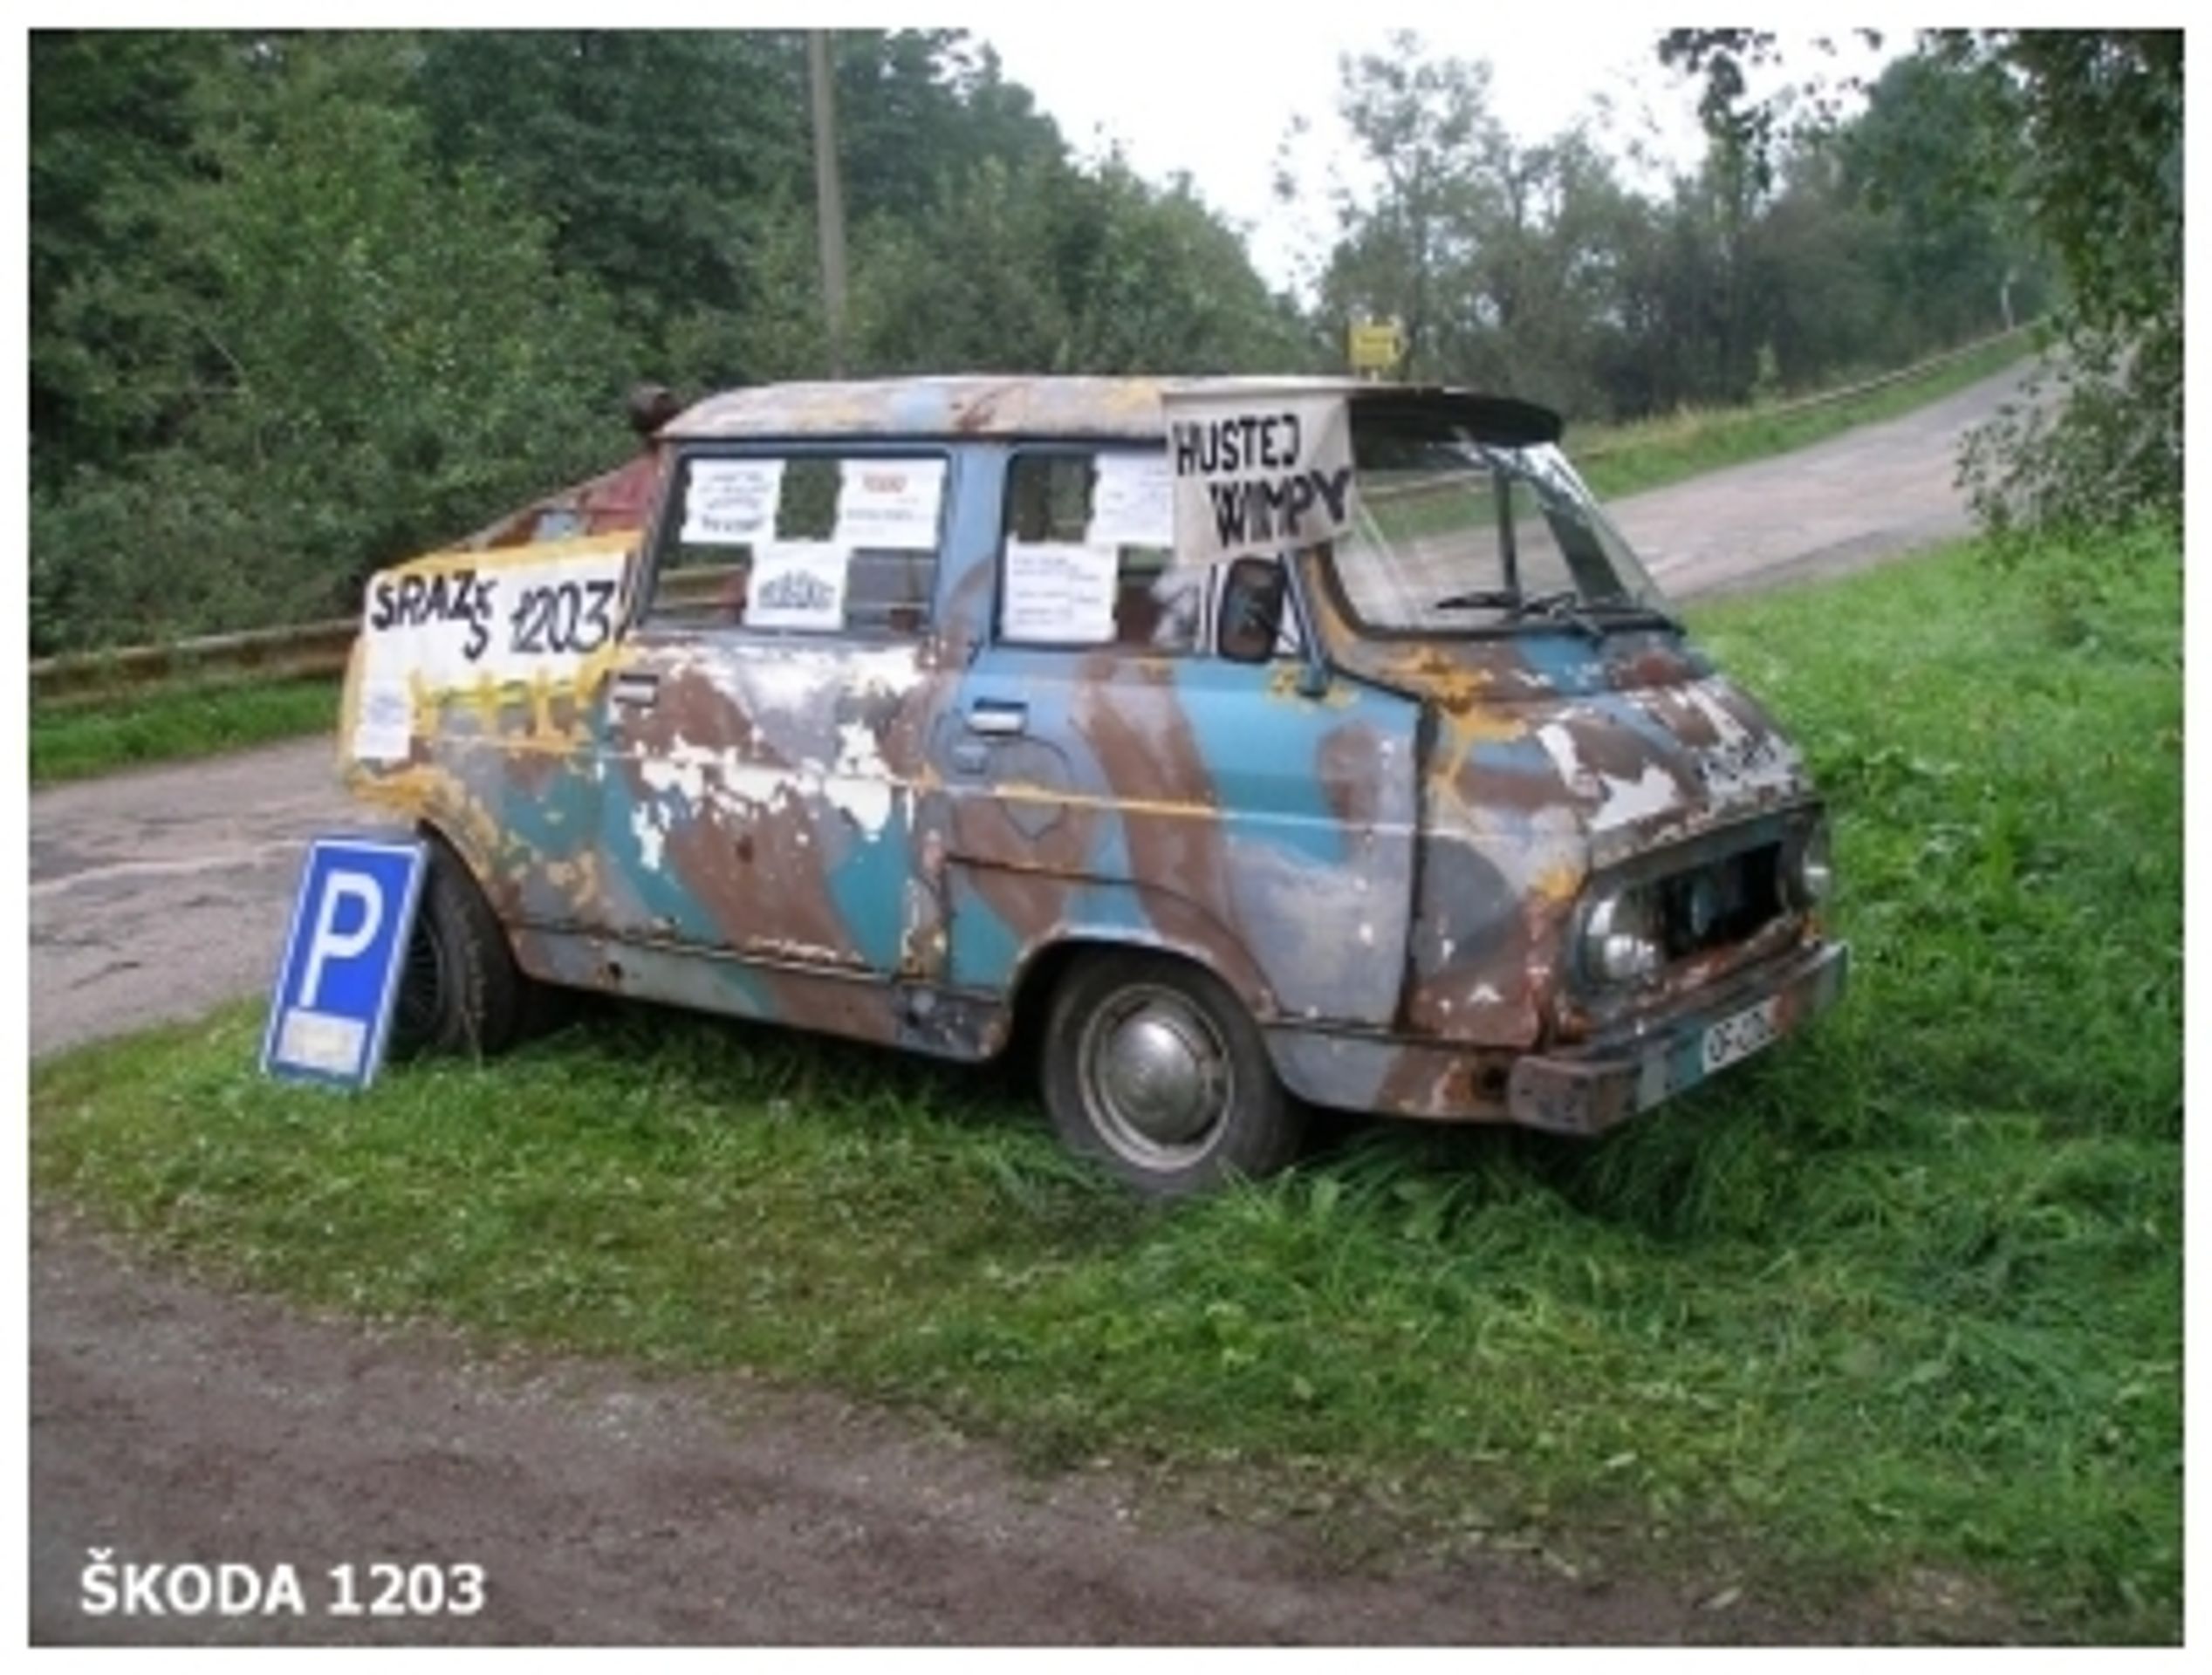 Kultovní Škoda 1203 - 74 - Fotogalerie: Kultovní “dvanda“ slaví. Podívejte se na originální úpravy (30/39)